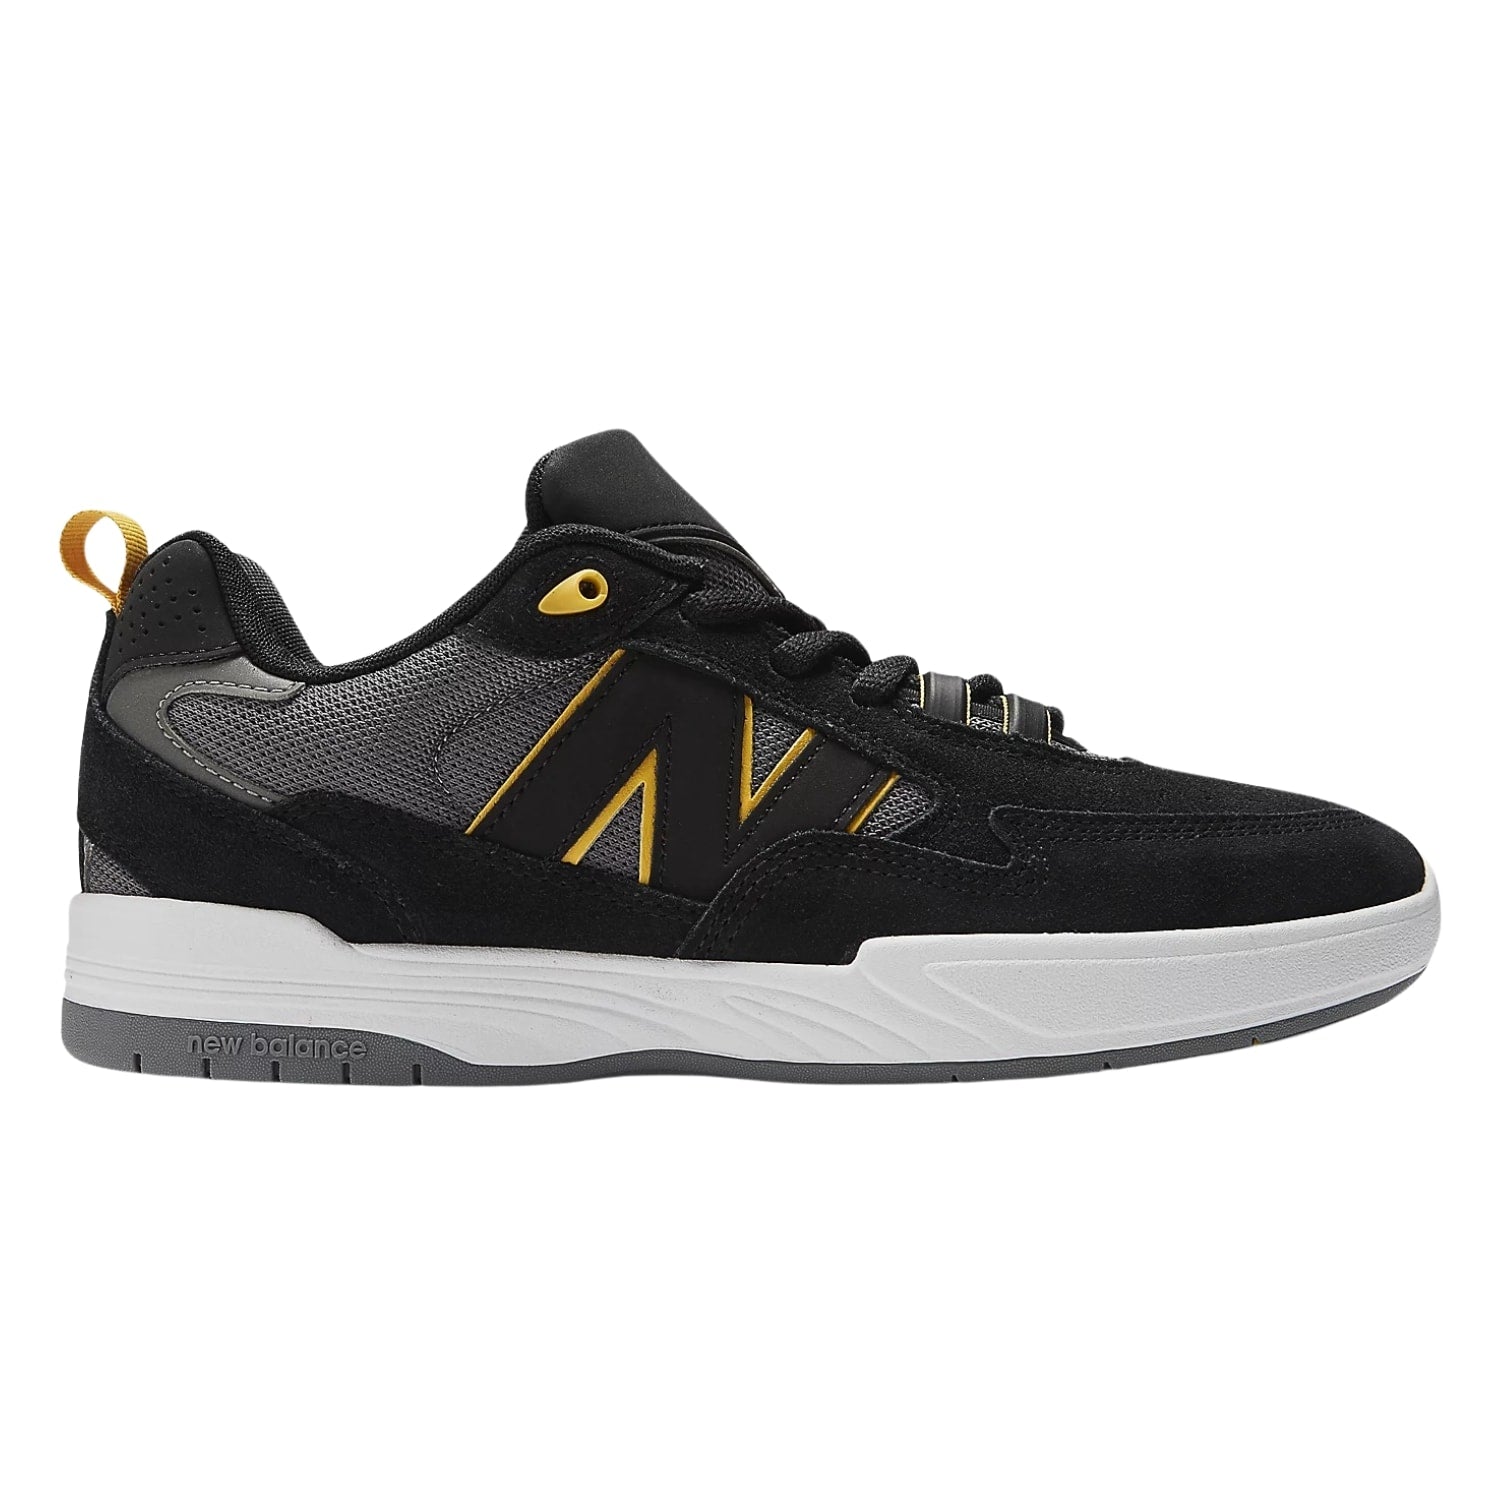 New Balance Numeric Nm808 Tiago Lemos Skate Shoes - Black/Yellow - Mens Skate Shoes by New Balance Numeric